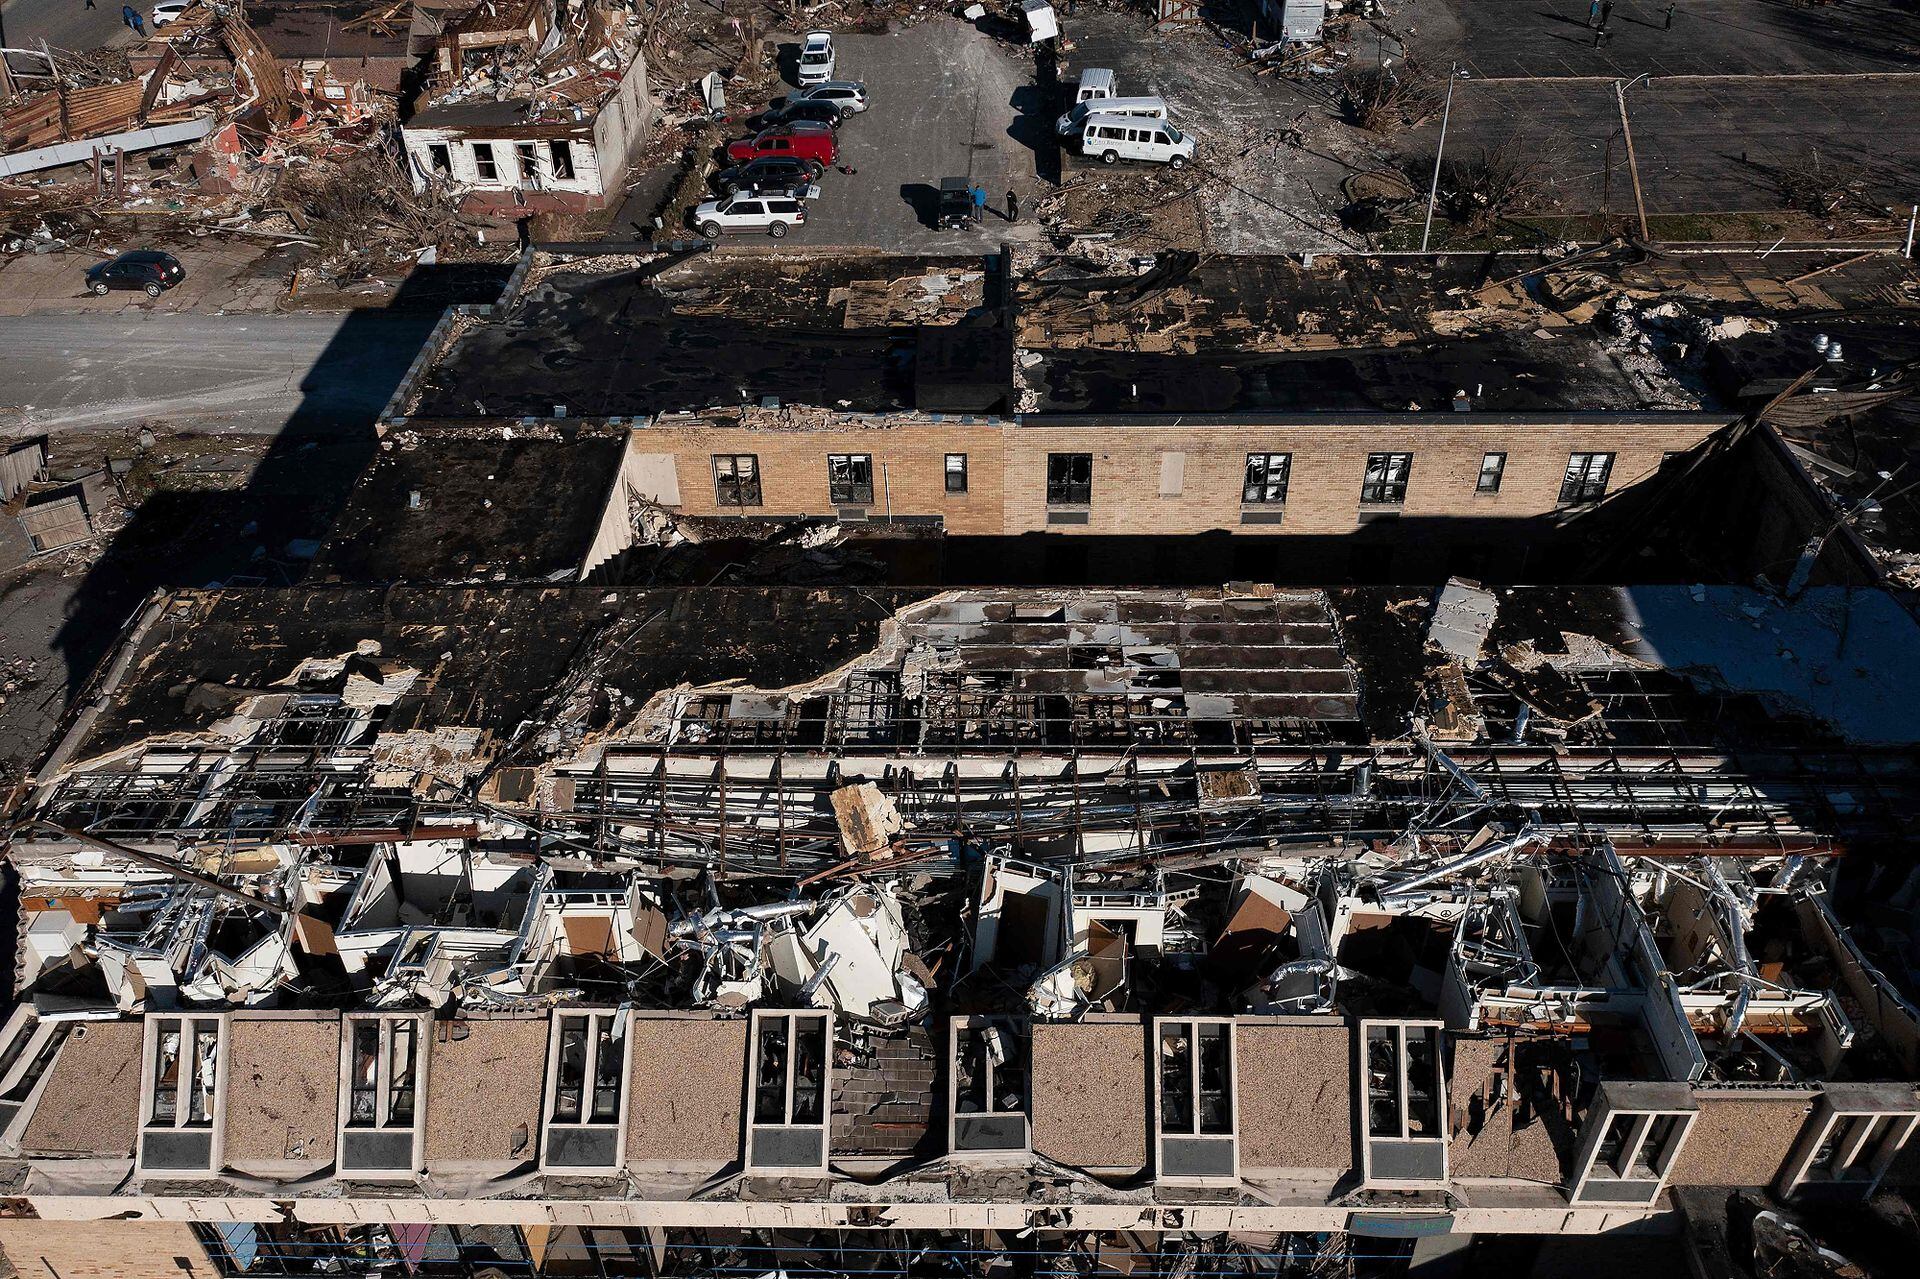 Buildings were demolished in Mayfield, Kentucky